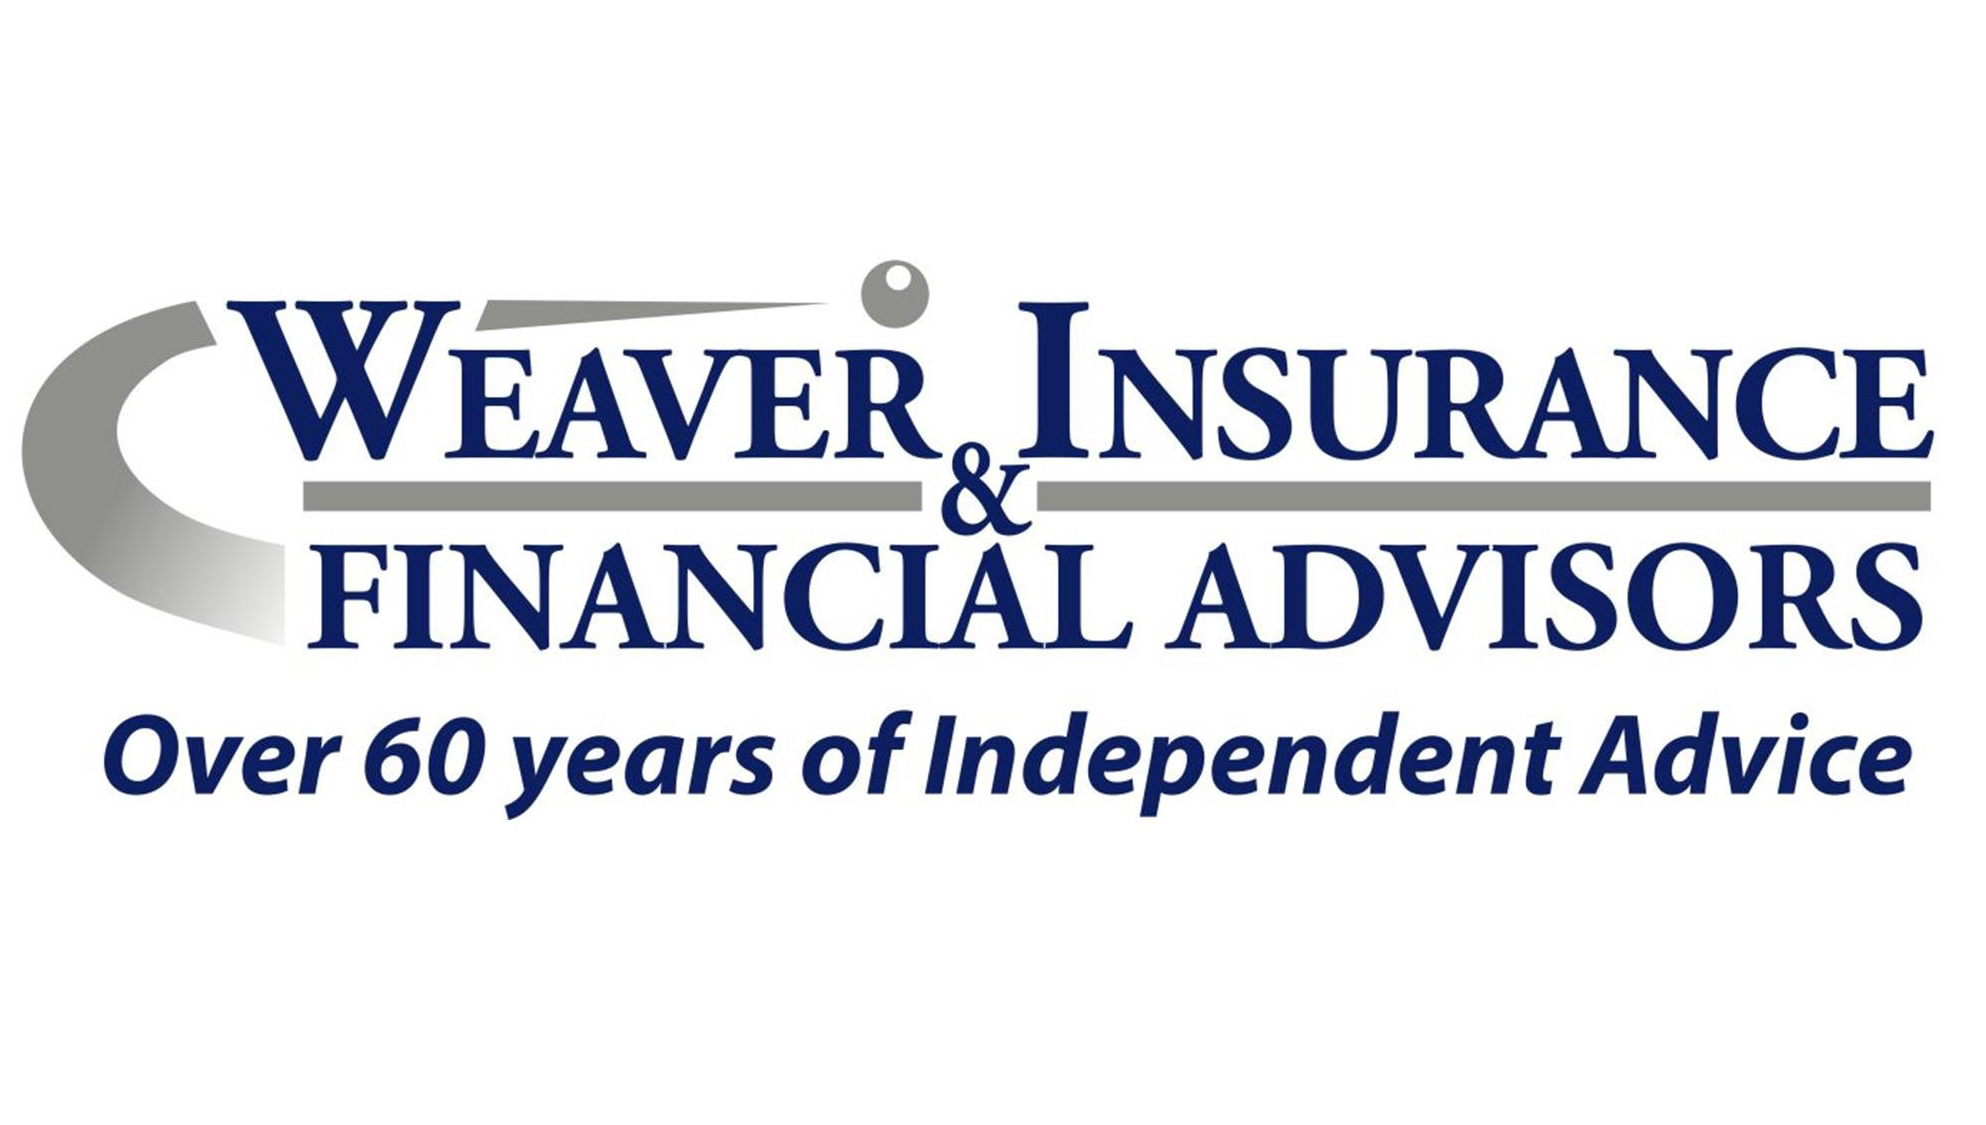 2. Weaver Insurance & Financial Advisors (Bronze)